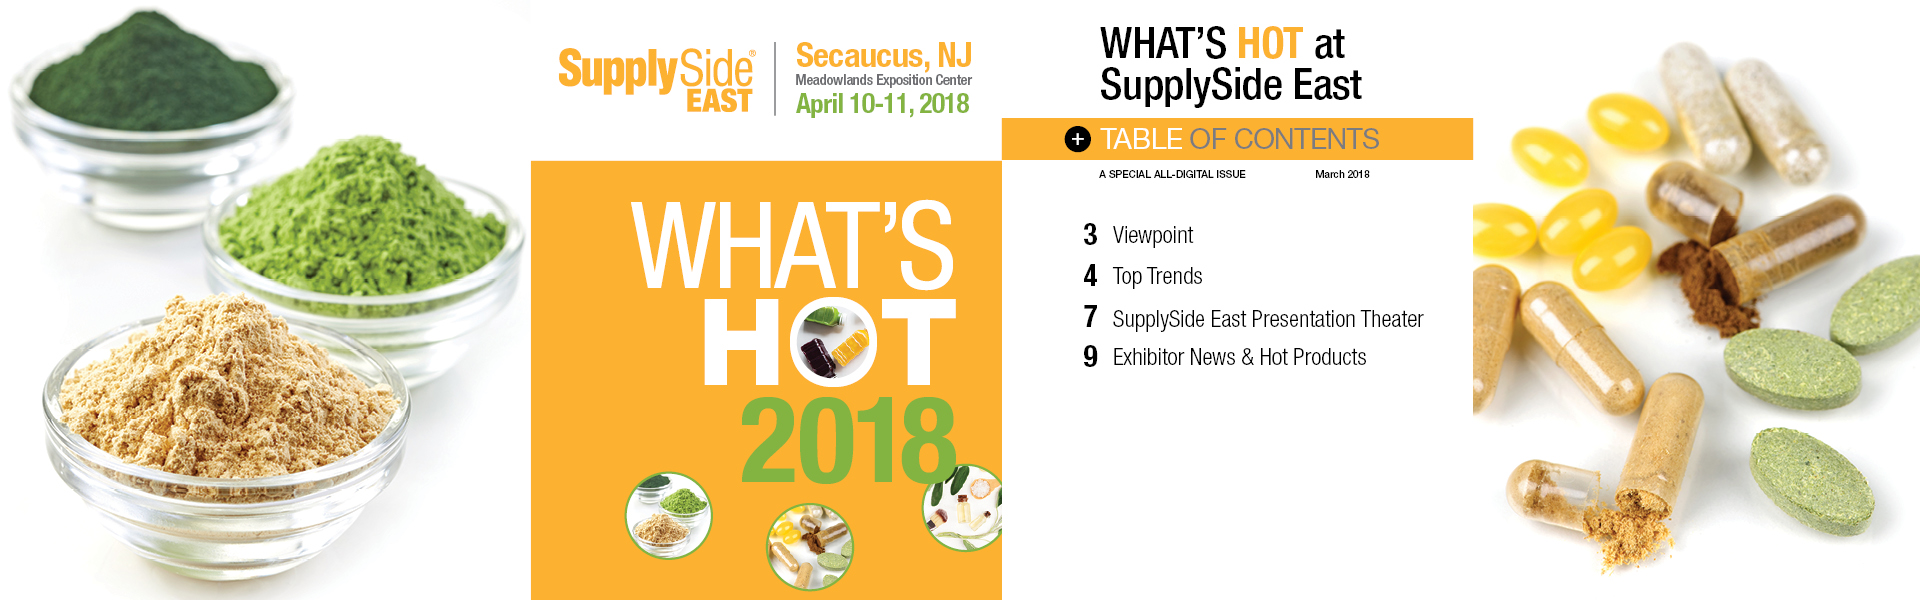 SupplySide East 2018